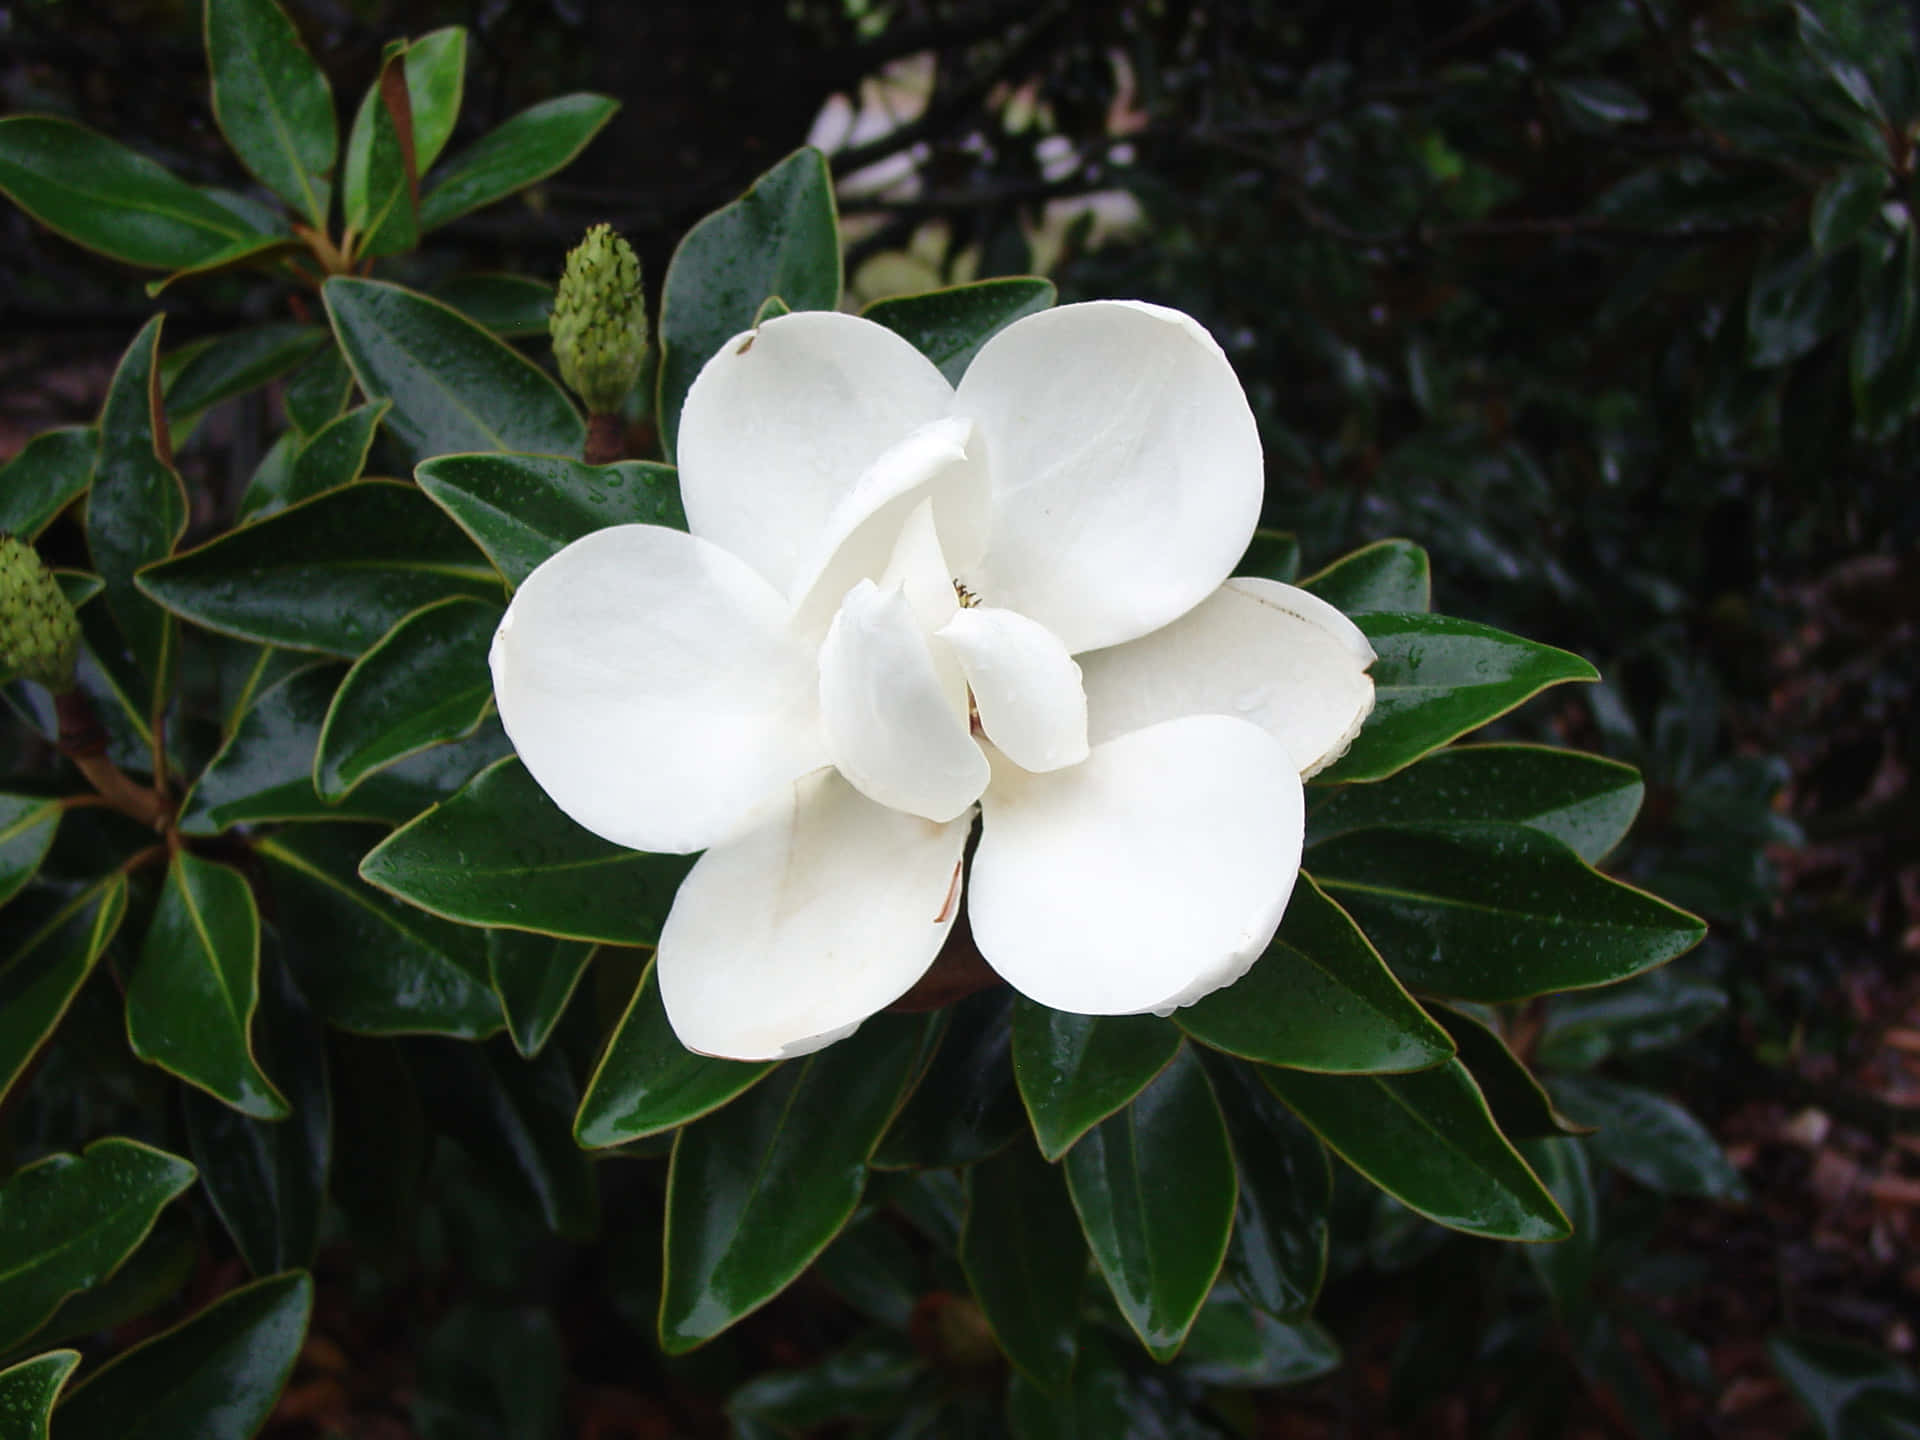 Magnoliain Fiore, Aggiungendo Una Spruzzata Di Colore